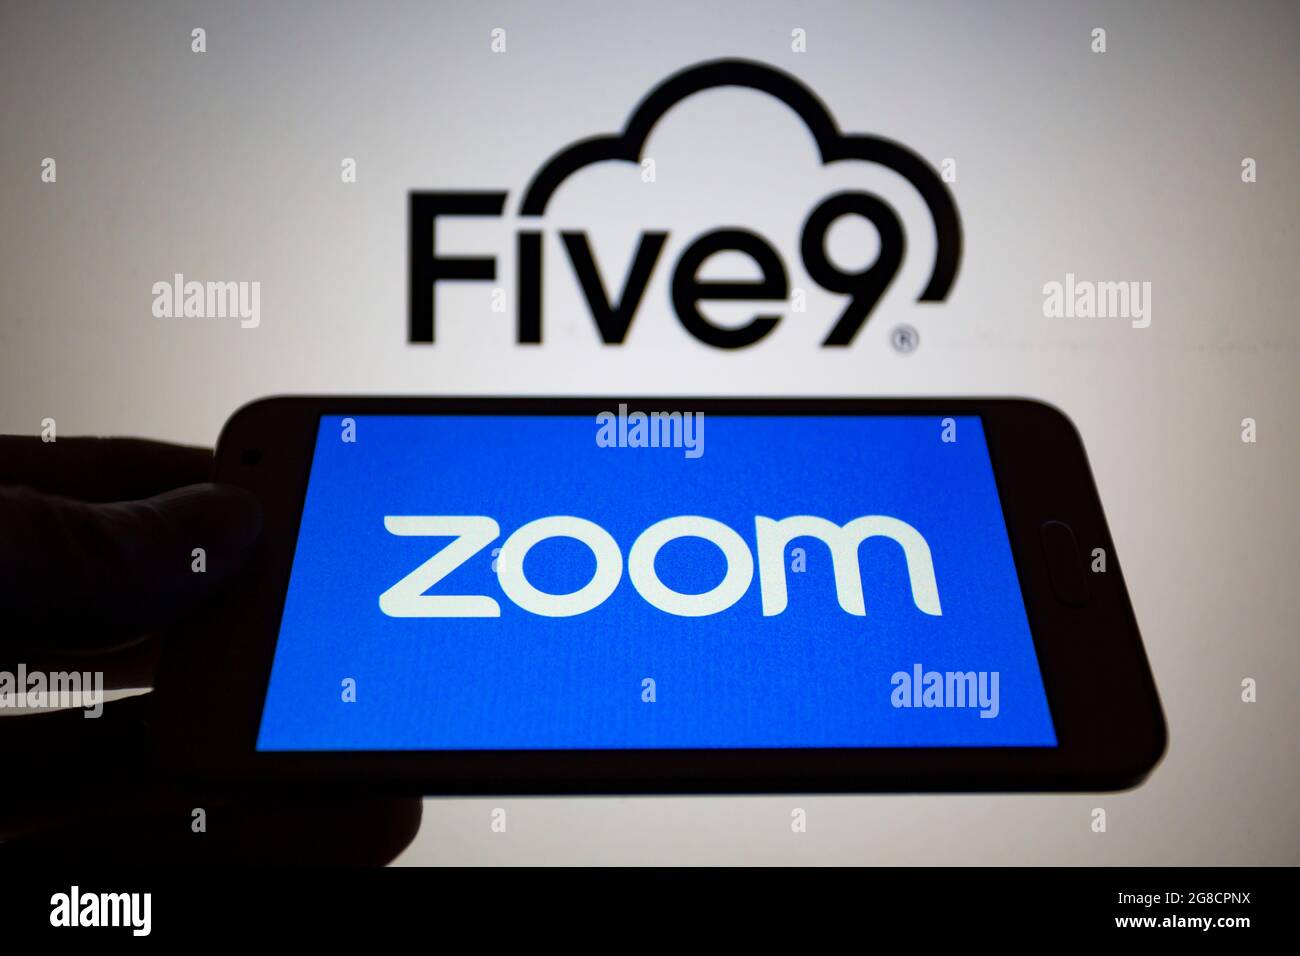 Asunción, Paraguay. 19th de julio de 2021. Foto de ilustración: El logotipo de Zoom se muestra en un smartphone con el logotipo de Five9 en la pantalla. Zoom Video Communications, Inc. (NASDAQ: ZM) anunció el 18 de julio que ha firmado un acuerdo definitivo para adquirir Five9, Inc. (NASDAQ: FIVB), un proveedor del centro de contacto inteligente en la nube, en una transacción de acciones valoradas en aproximadamente $14,7 mil millones. (Imagen de crédito: © Andre M. Chang/ZUMA Press Wire) Foto de stock